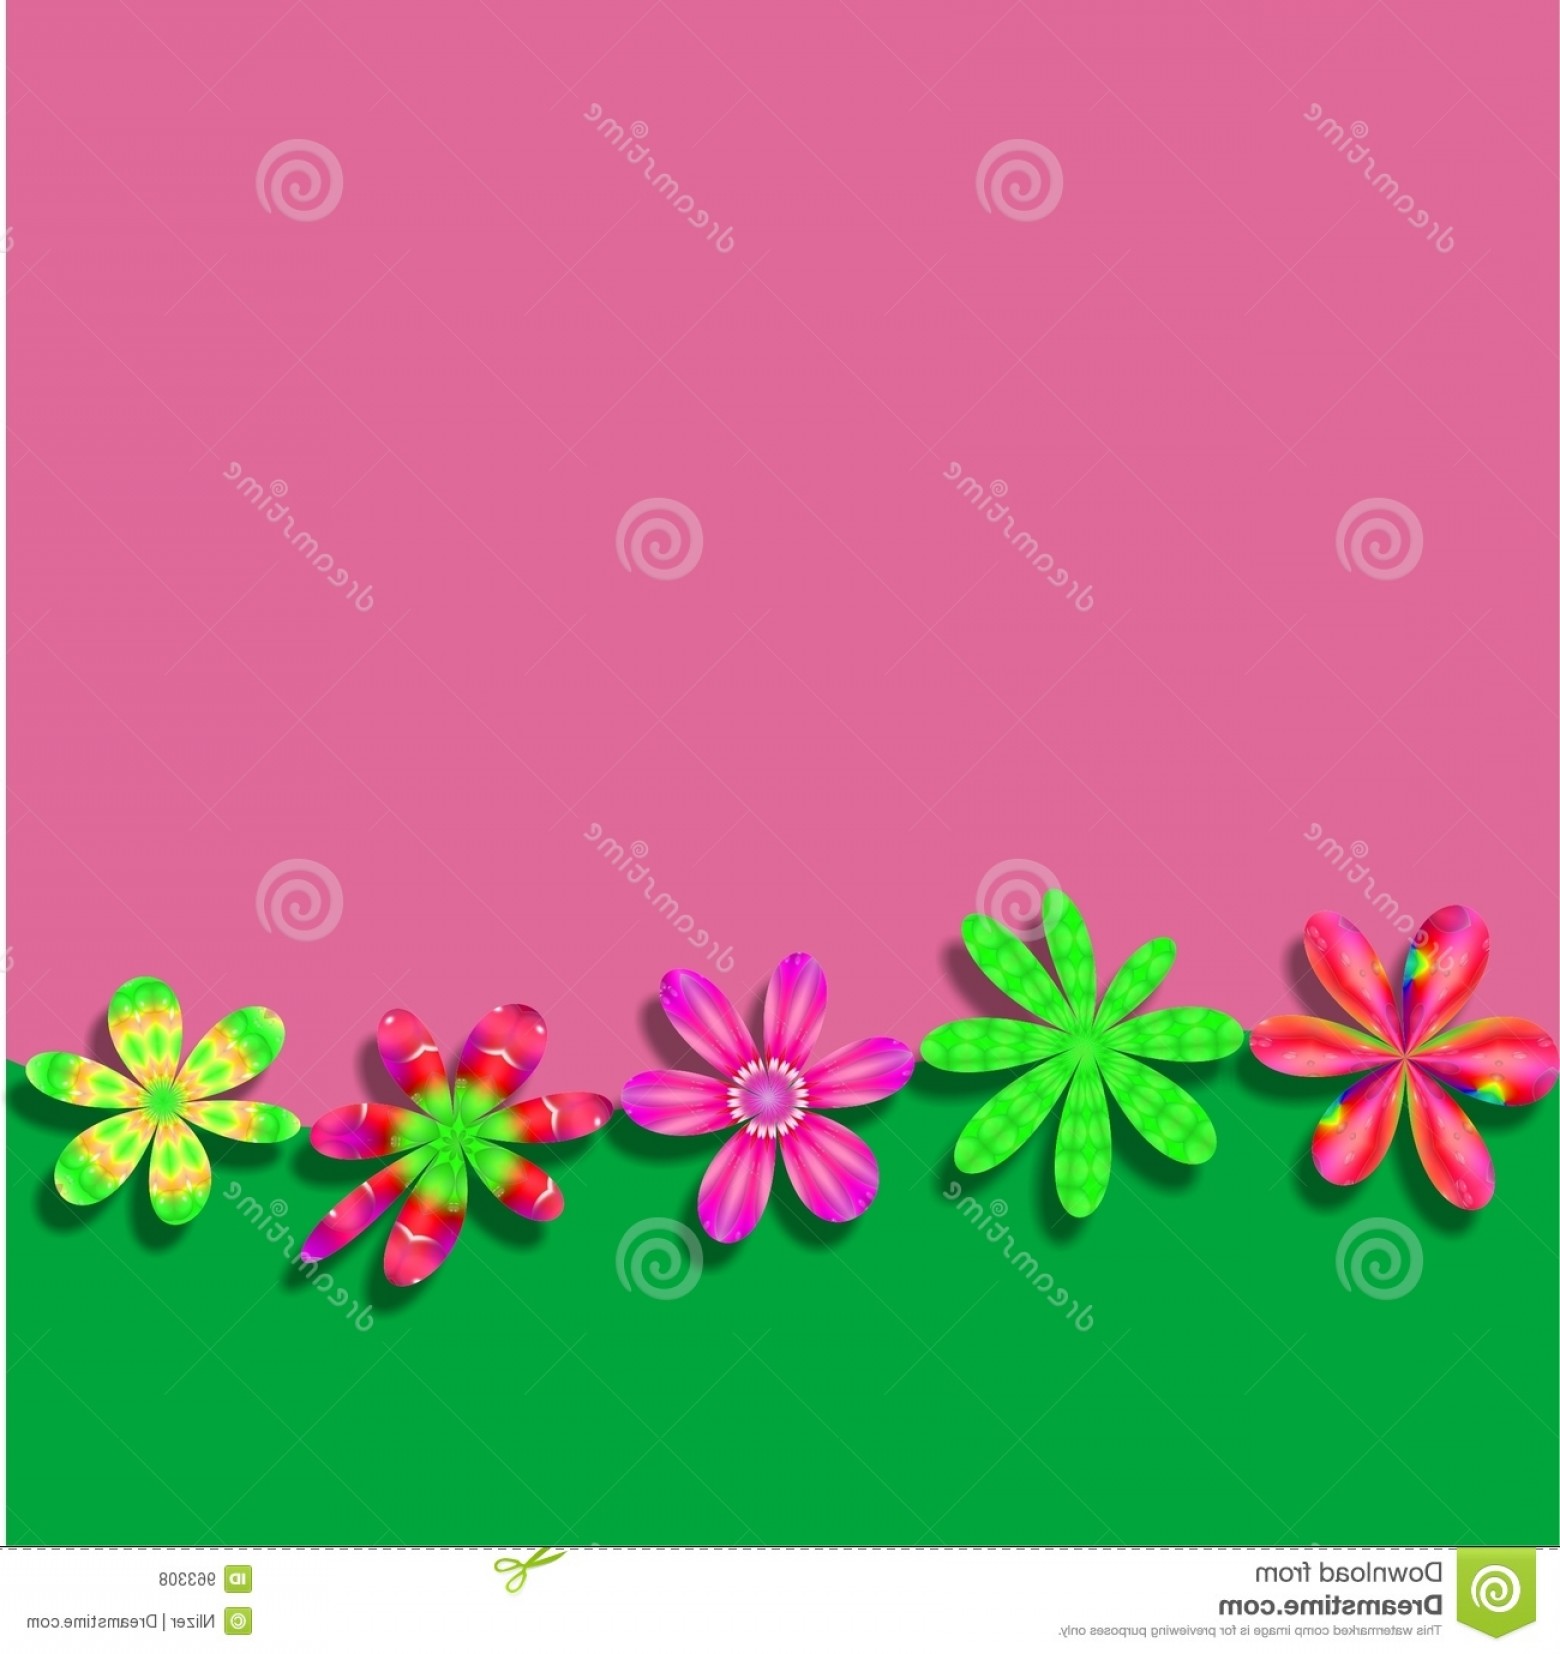 Disney Frames Flower Vectors - Green And Pink Flower - HD Wallpaper 